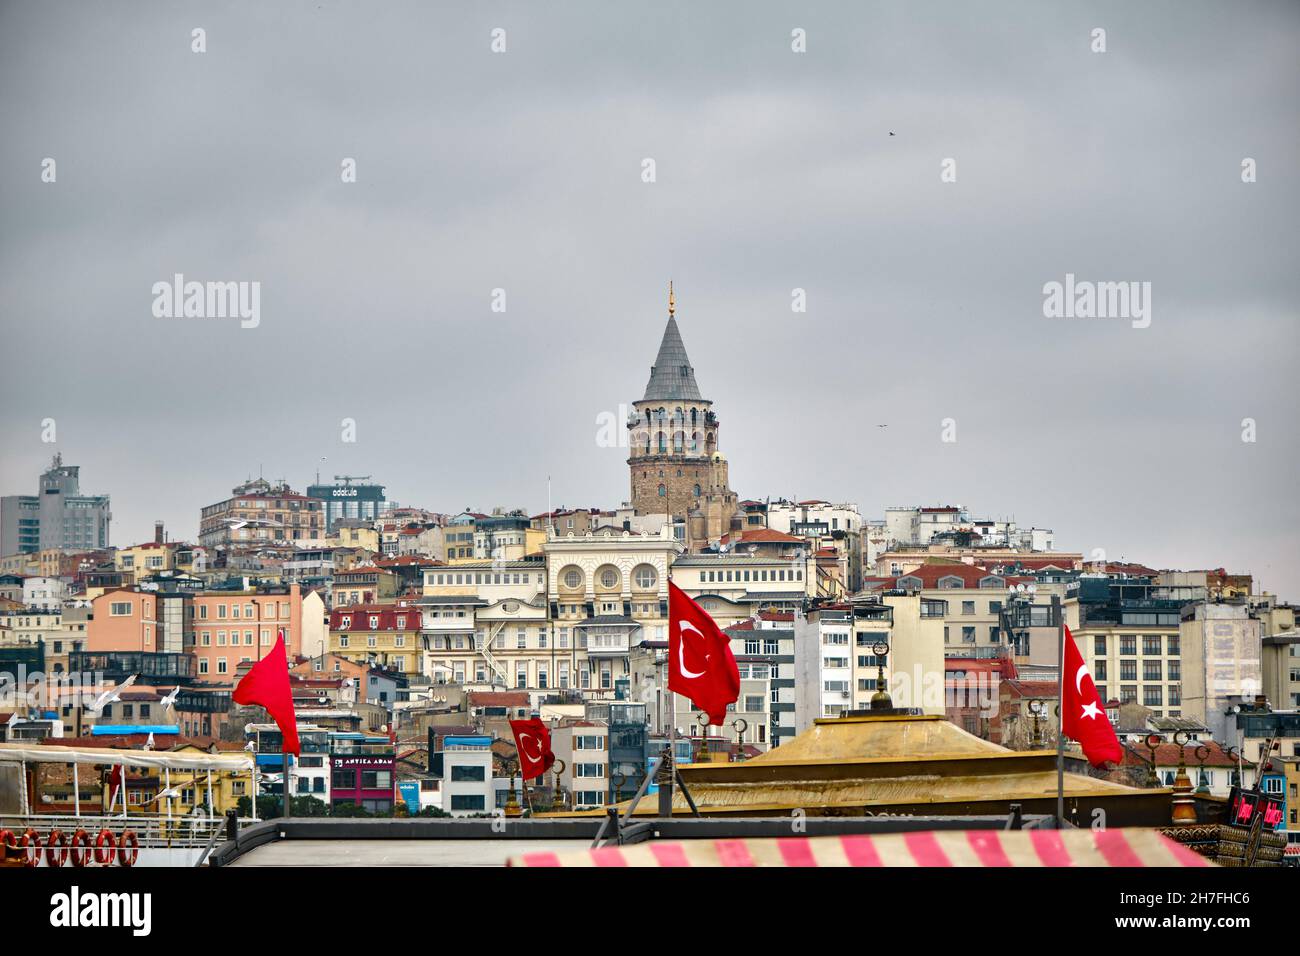 Der berühmte galata-Turm an bewölkten und regnerischen Tagen, indem er Fotos aus dem eminonu-Viertel hinter den vielen lokalen Apartments und türkischen Flaggen gemacht hat Stockfoto